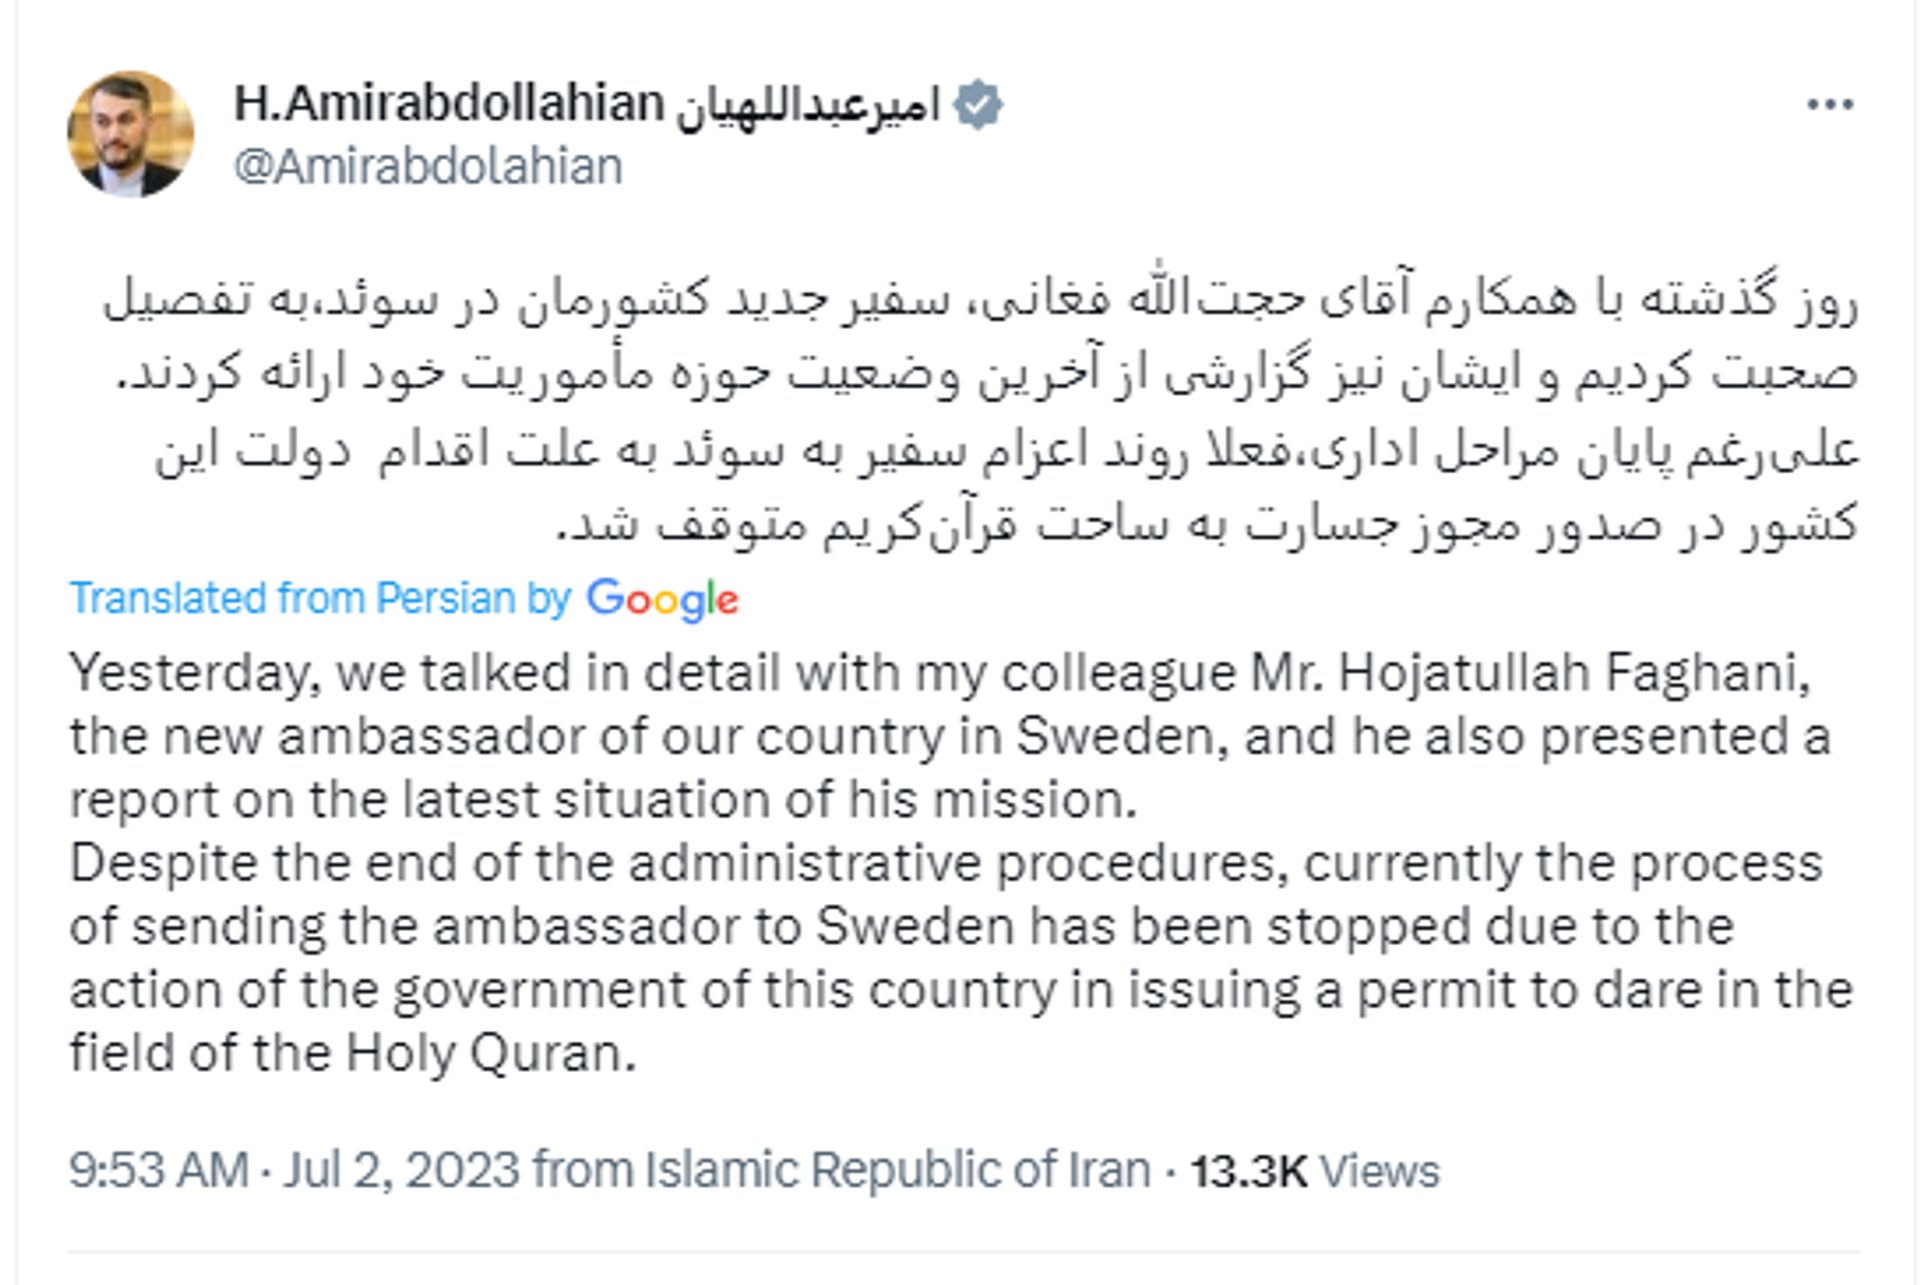 Screenshot of Twitter post by Iranian Foreign Minister Hossein Amir-Abdollahian. - Sputnik International, 1920, 02.07.2023